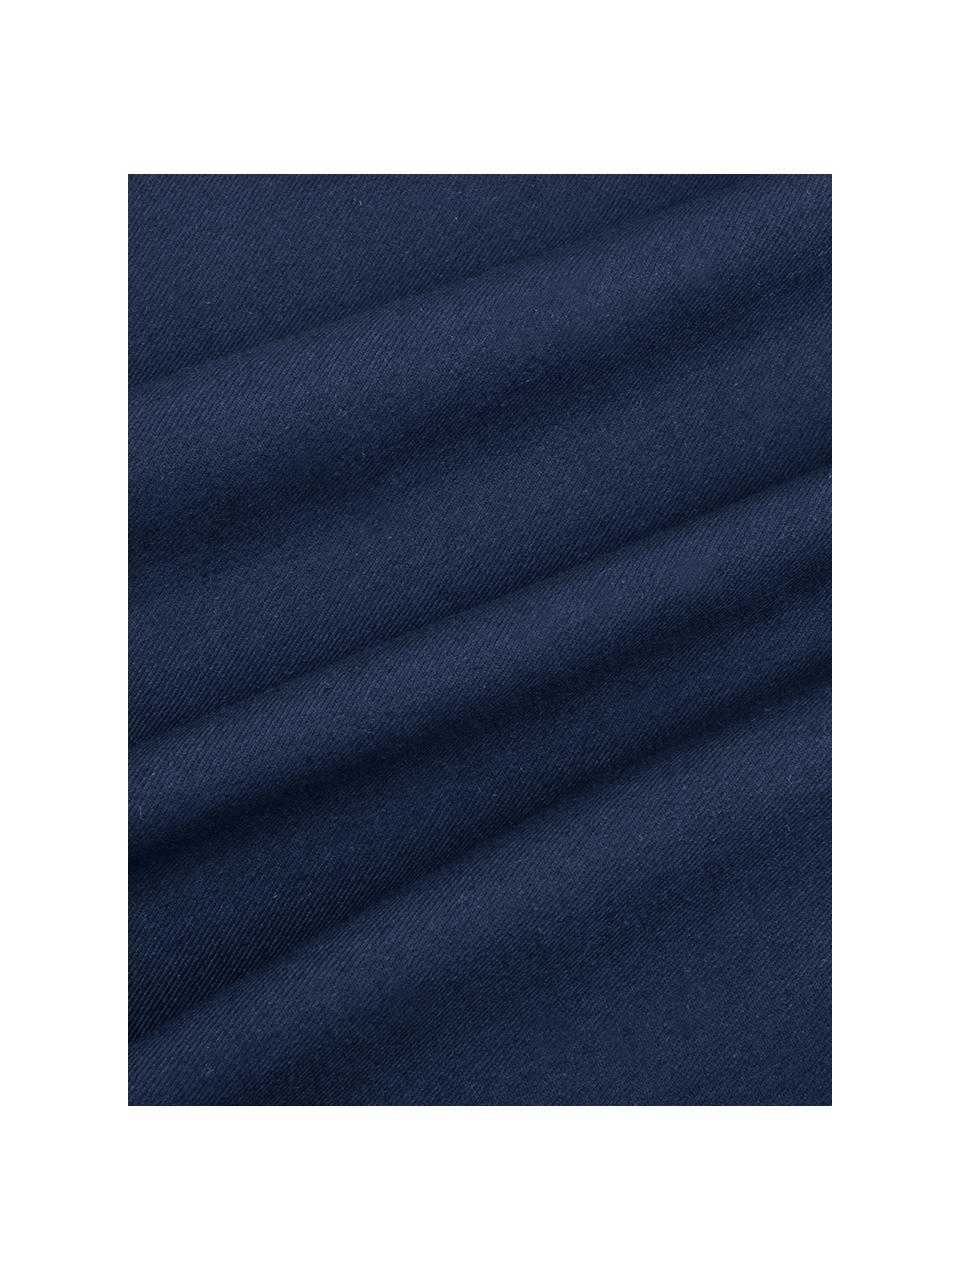 Poszewka na poduszkę z bawełny Mads, 100% bawełna, Granatowy, S 30 x D 50 cm